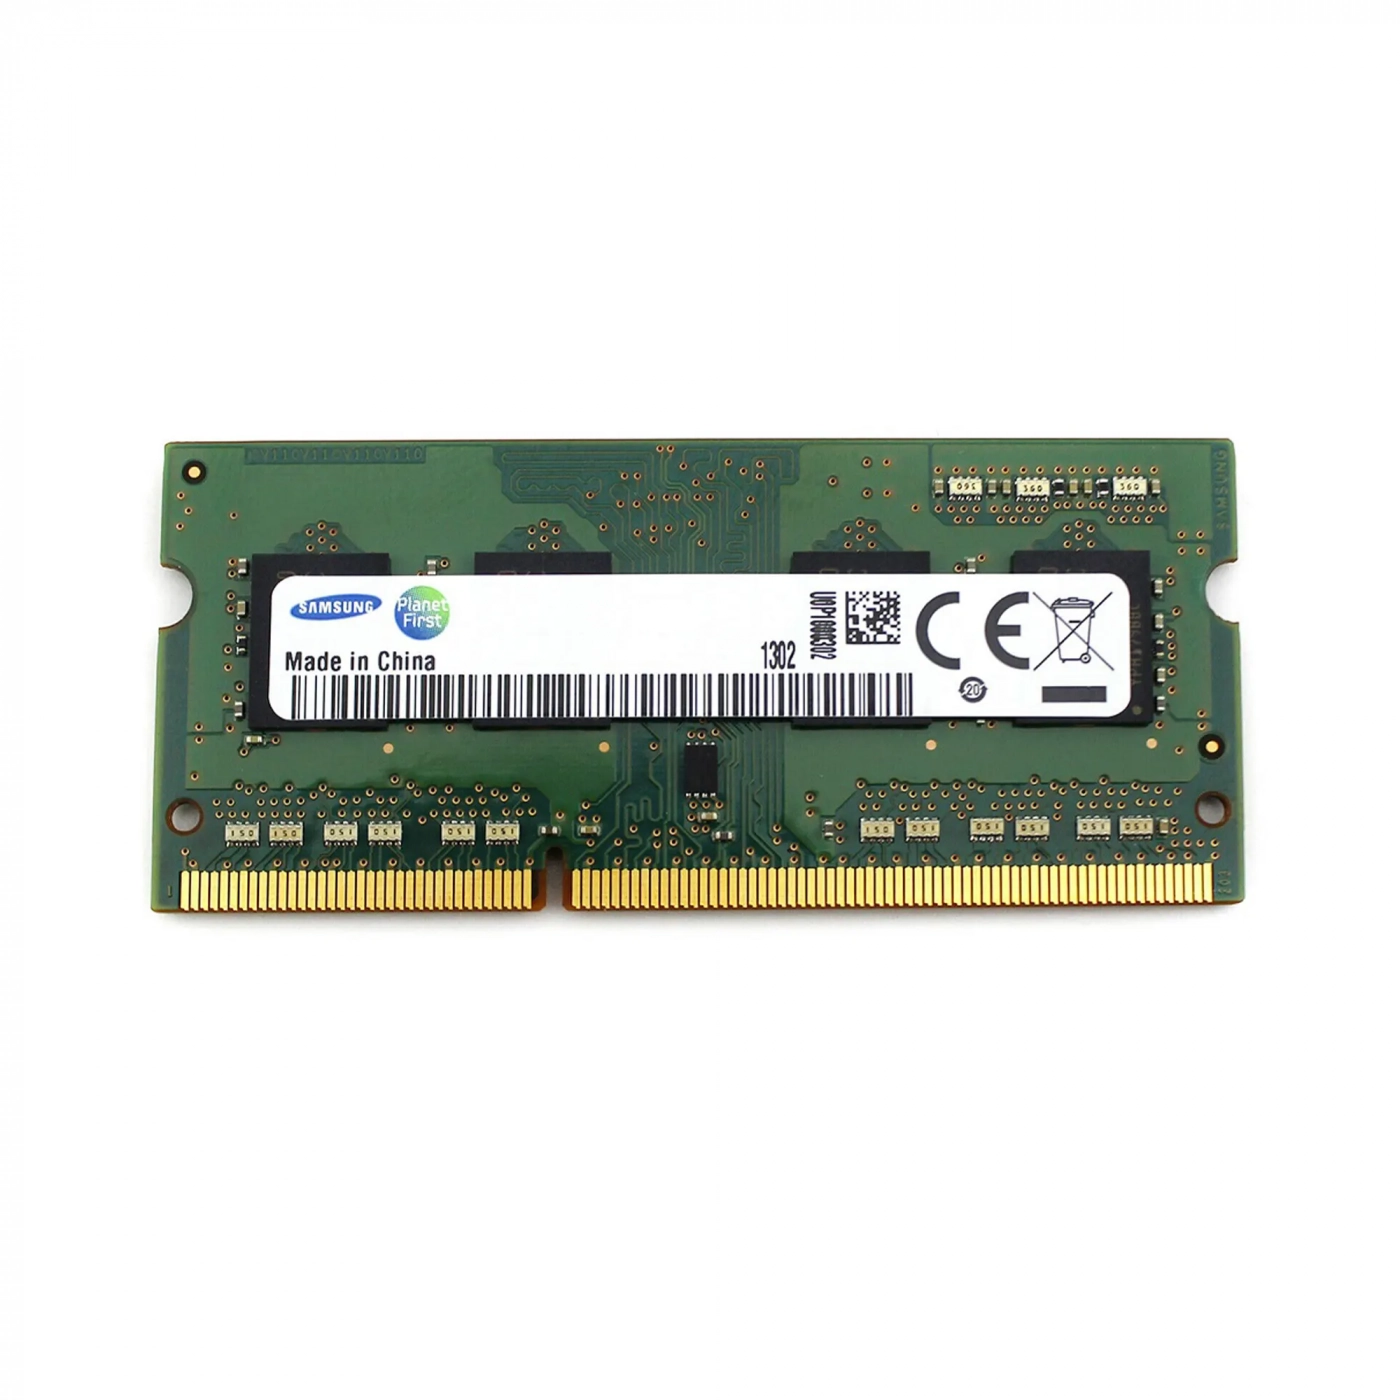 Купити Модуль пам'яті Samsung DDR3-1600 SODIMM 4GB (M471B5173BH0-CK0) - фото 1